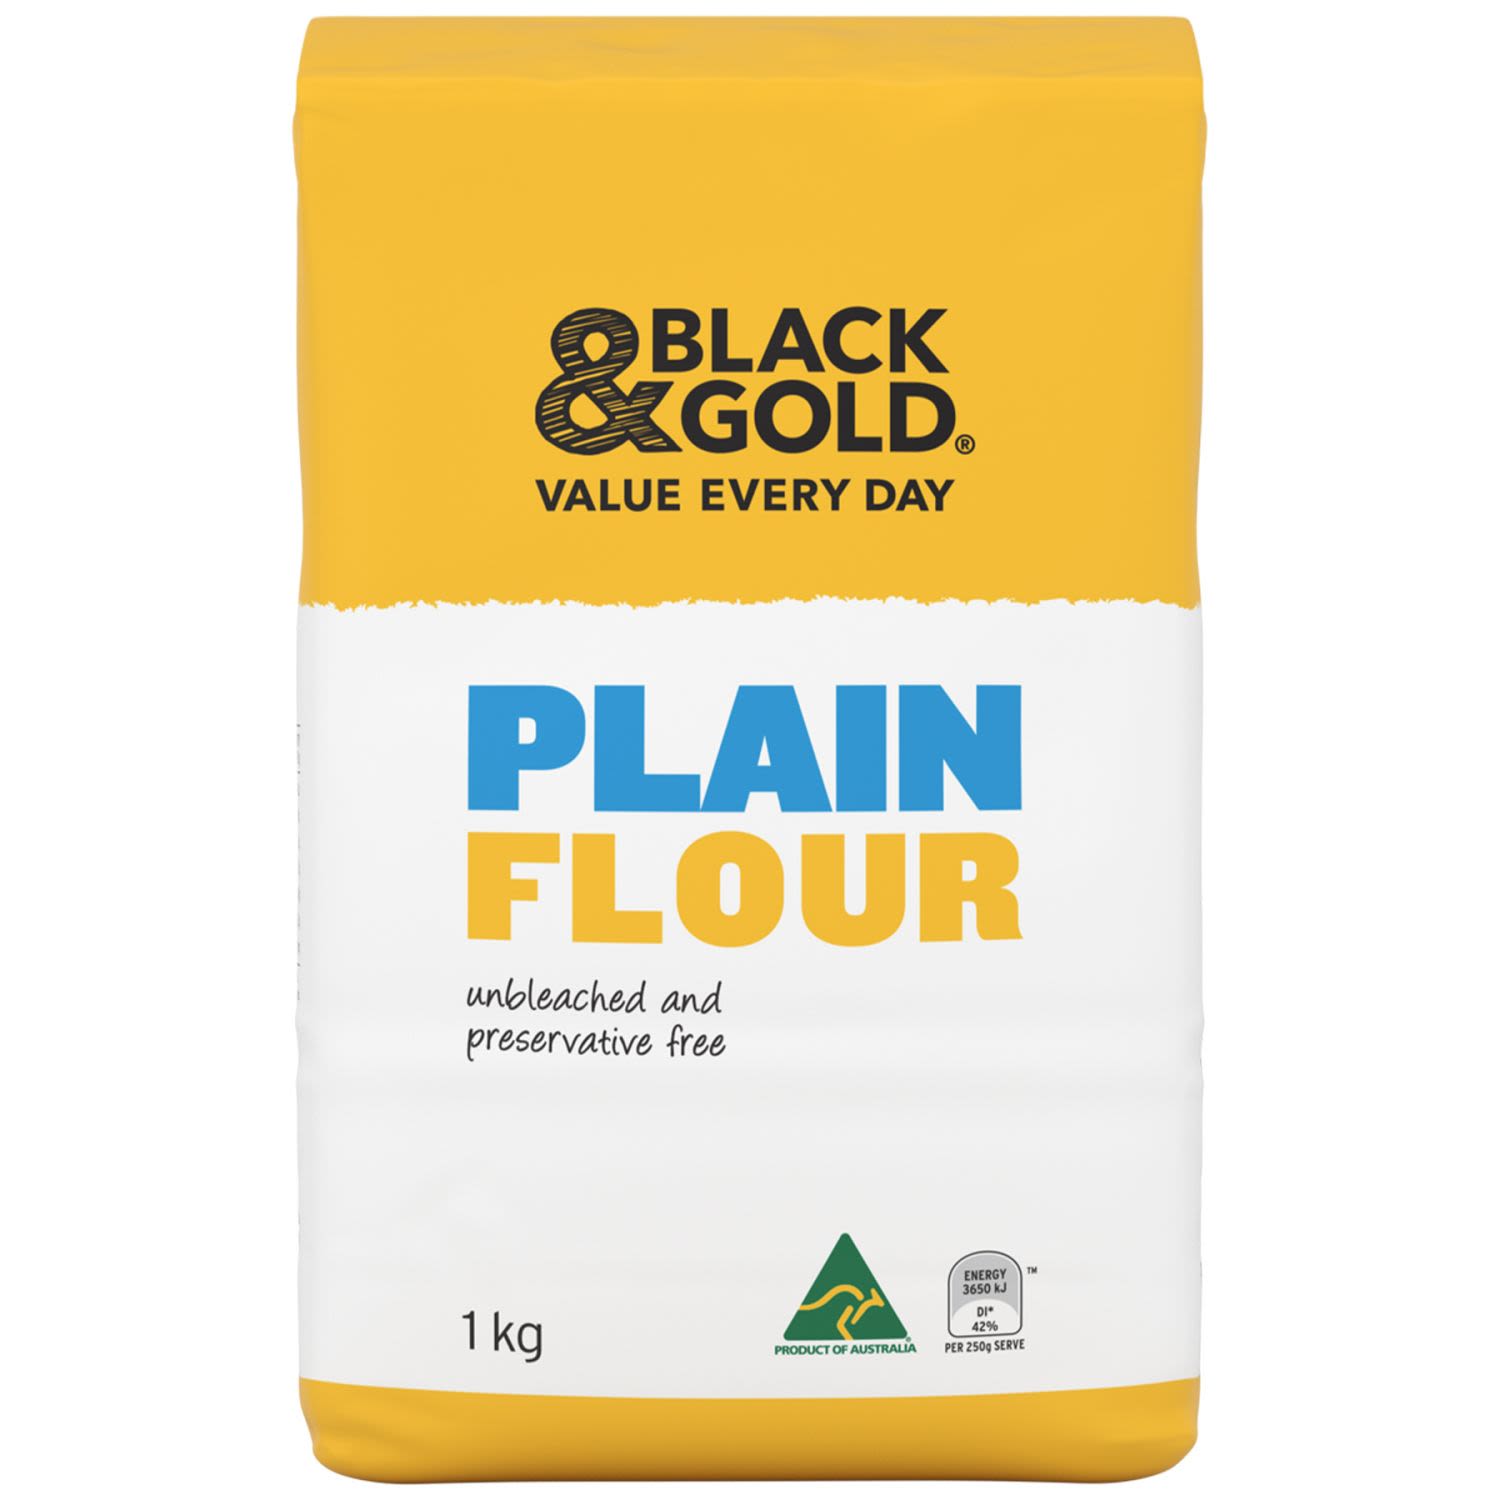 Black & Gold Plain Flour 2kg